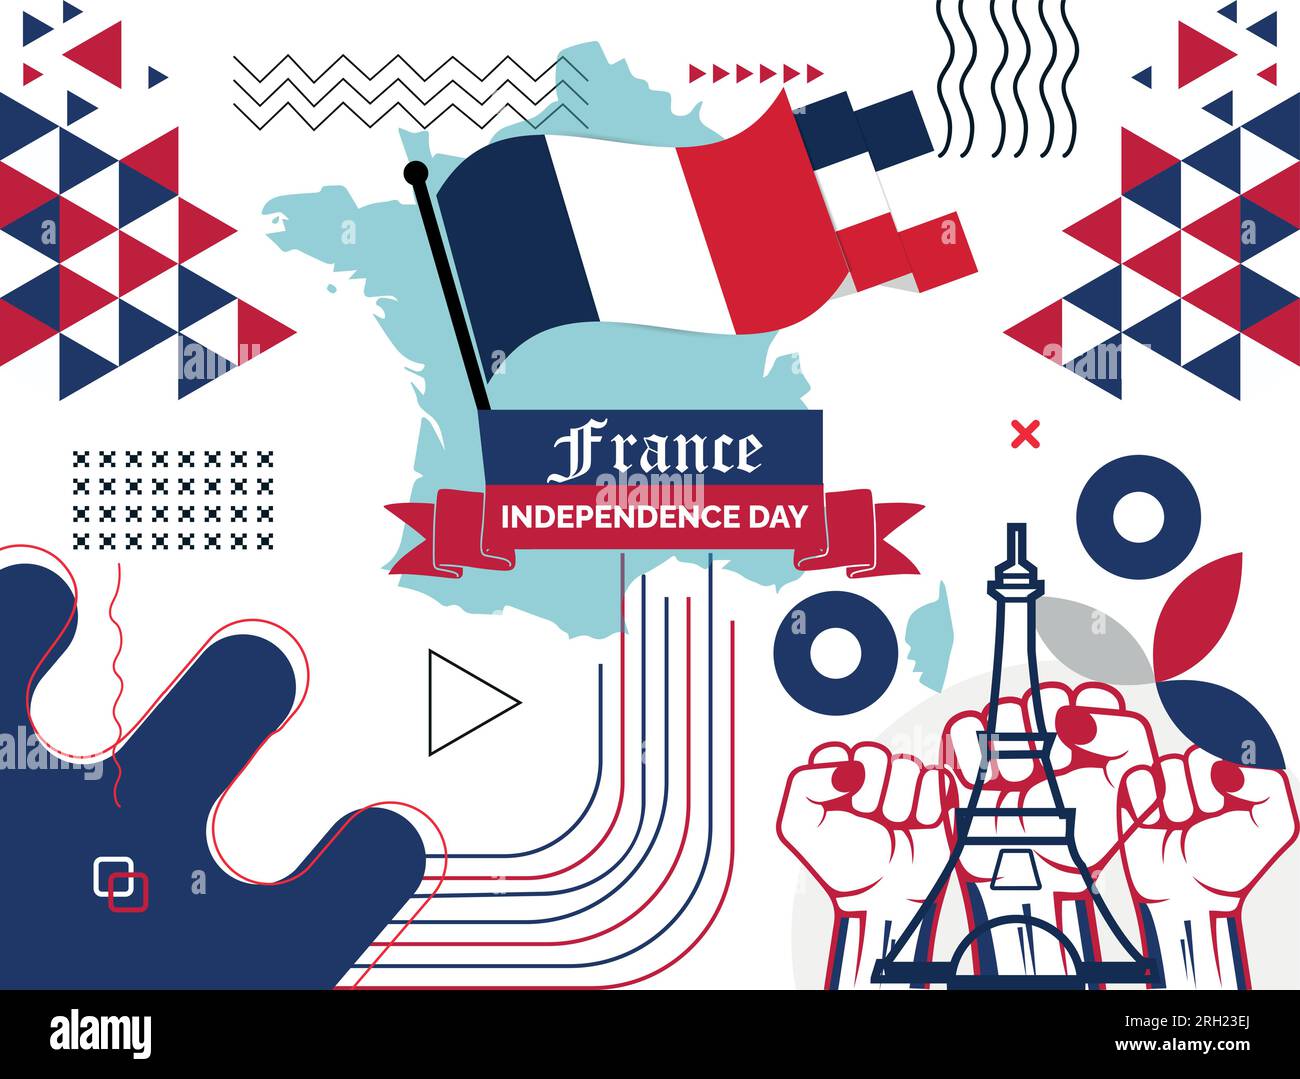 Bannerdesign für den Nationaltag in Frankreich. Französische Flagge und Kartenthema mit rotem und blauem Hintergrund des Eiffelturms. Präsidentschaftswahlen In La France. Stock Vektor